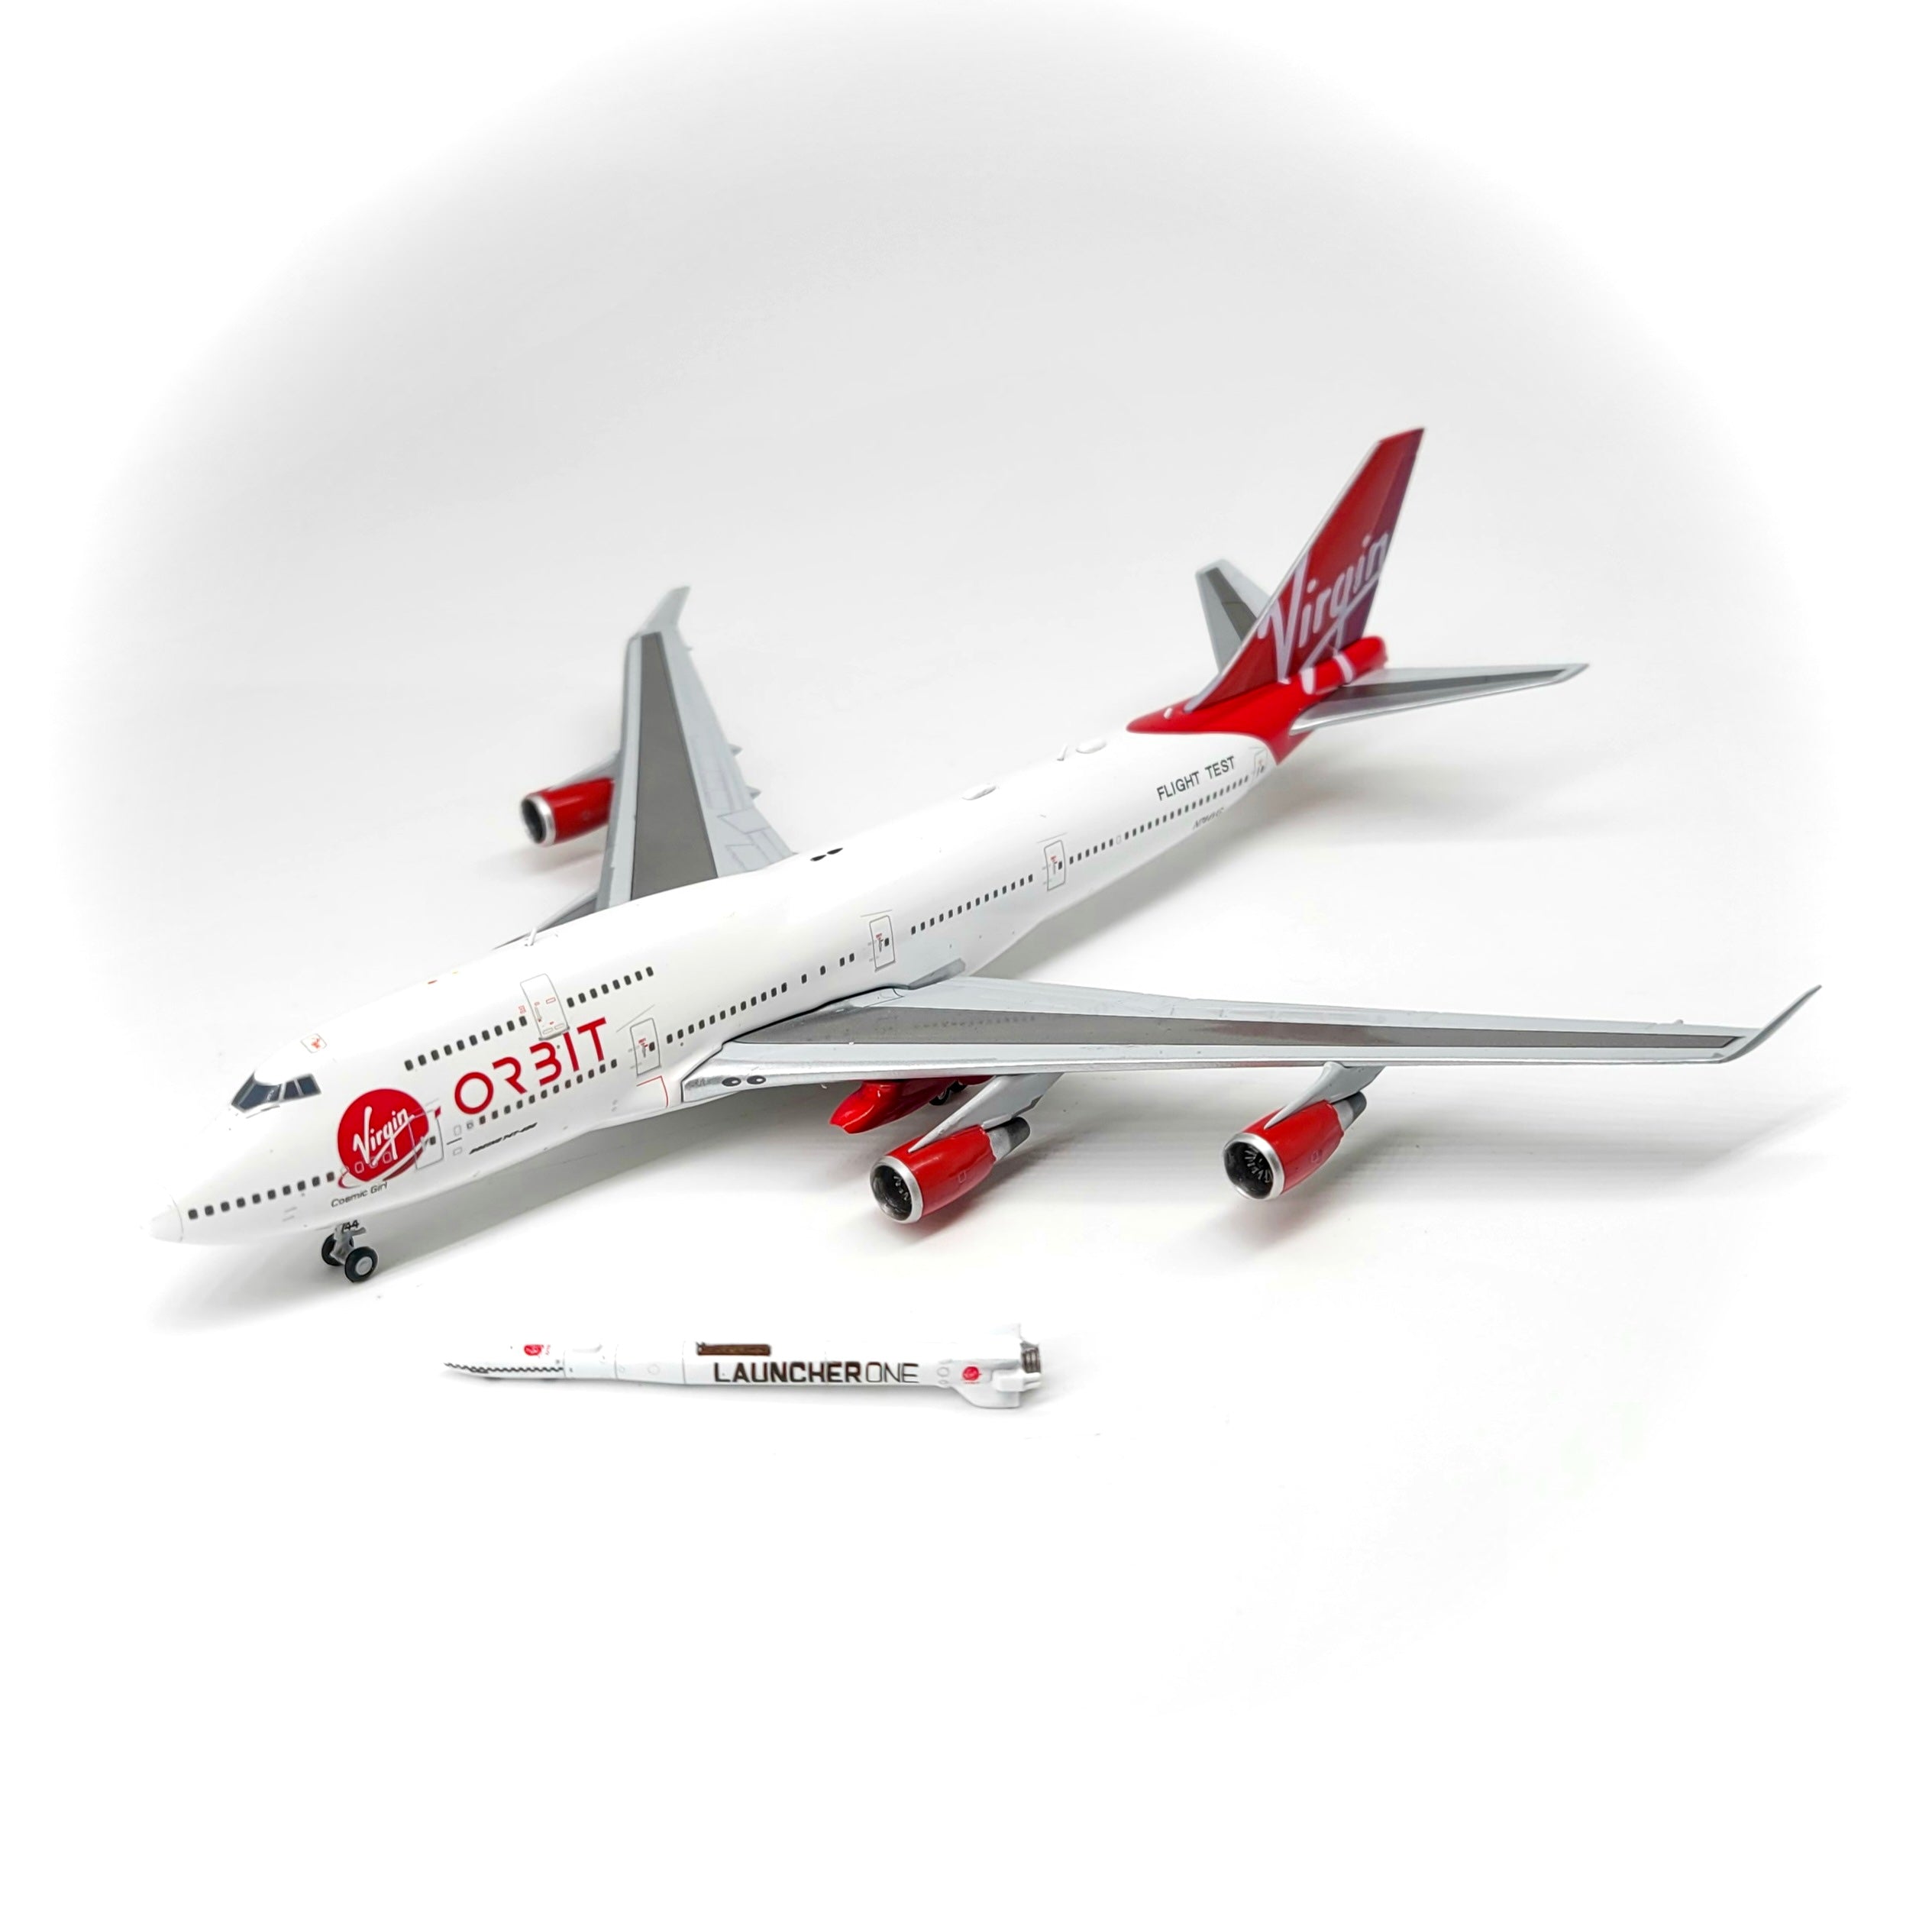 1/400 Virgin Orbit Boeing 747-400 w/ Launcher One (N744VG) – Pilot Shop  Hong Kong Limited